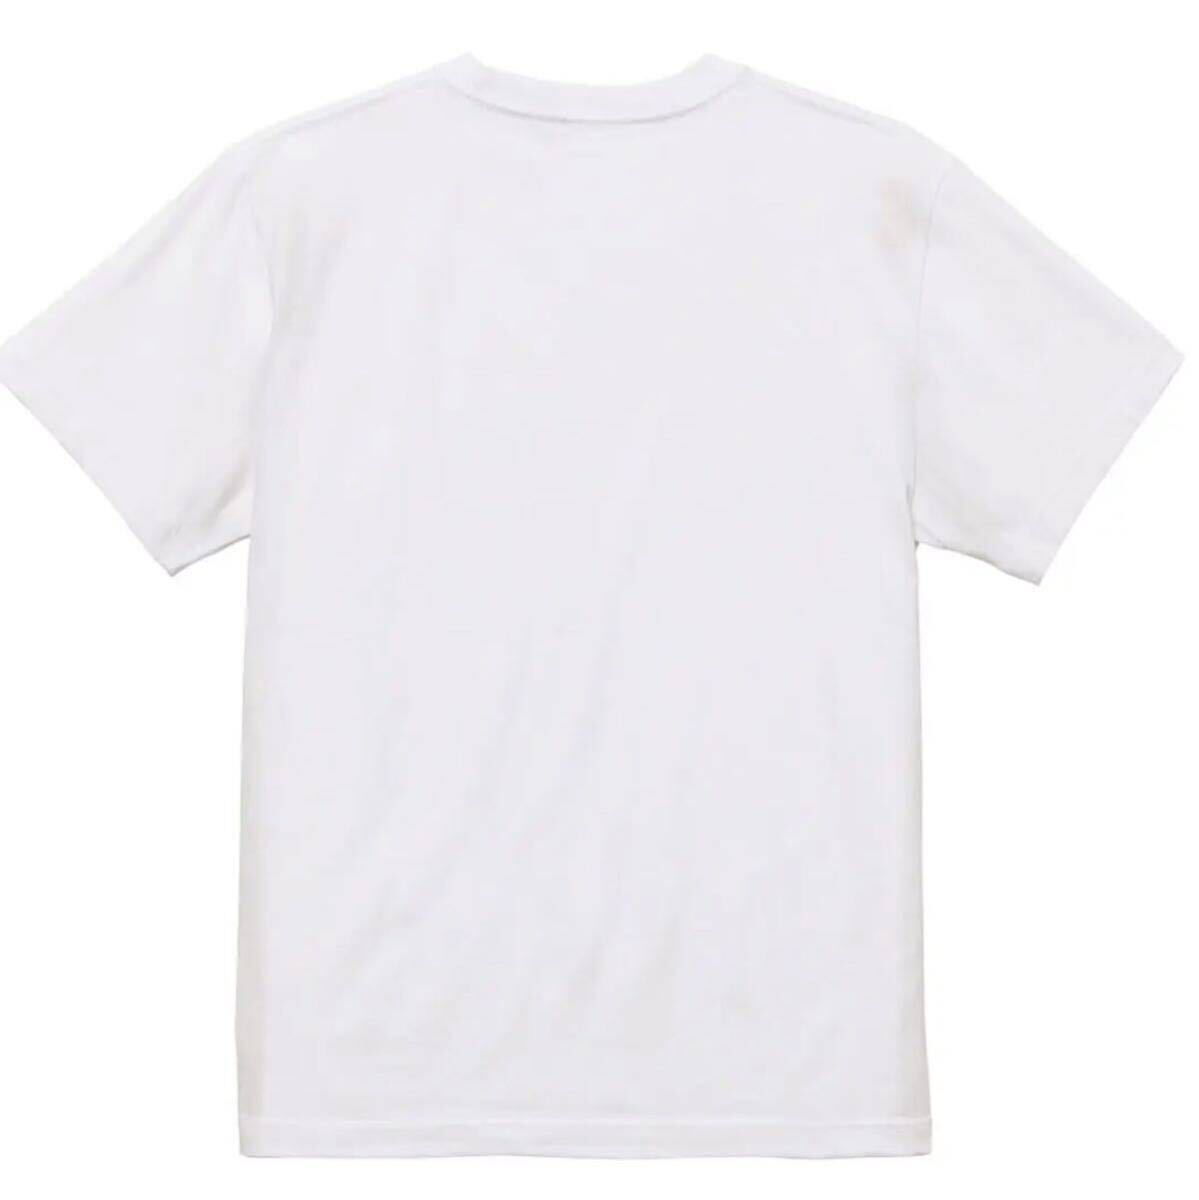 【送料込み】デスカーネルVSドナルド サイズ 白XLサイズ Tシャツ ネタT おもしろ 大阪名物 なんでやねん ギャグ ネタ ウケ狙い パロディ